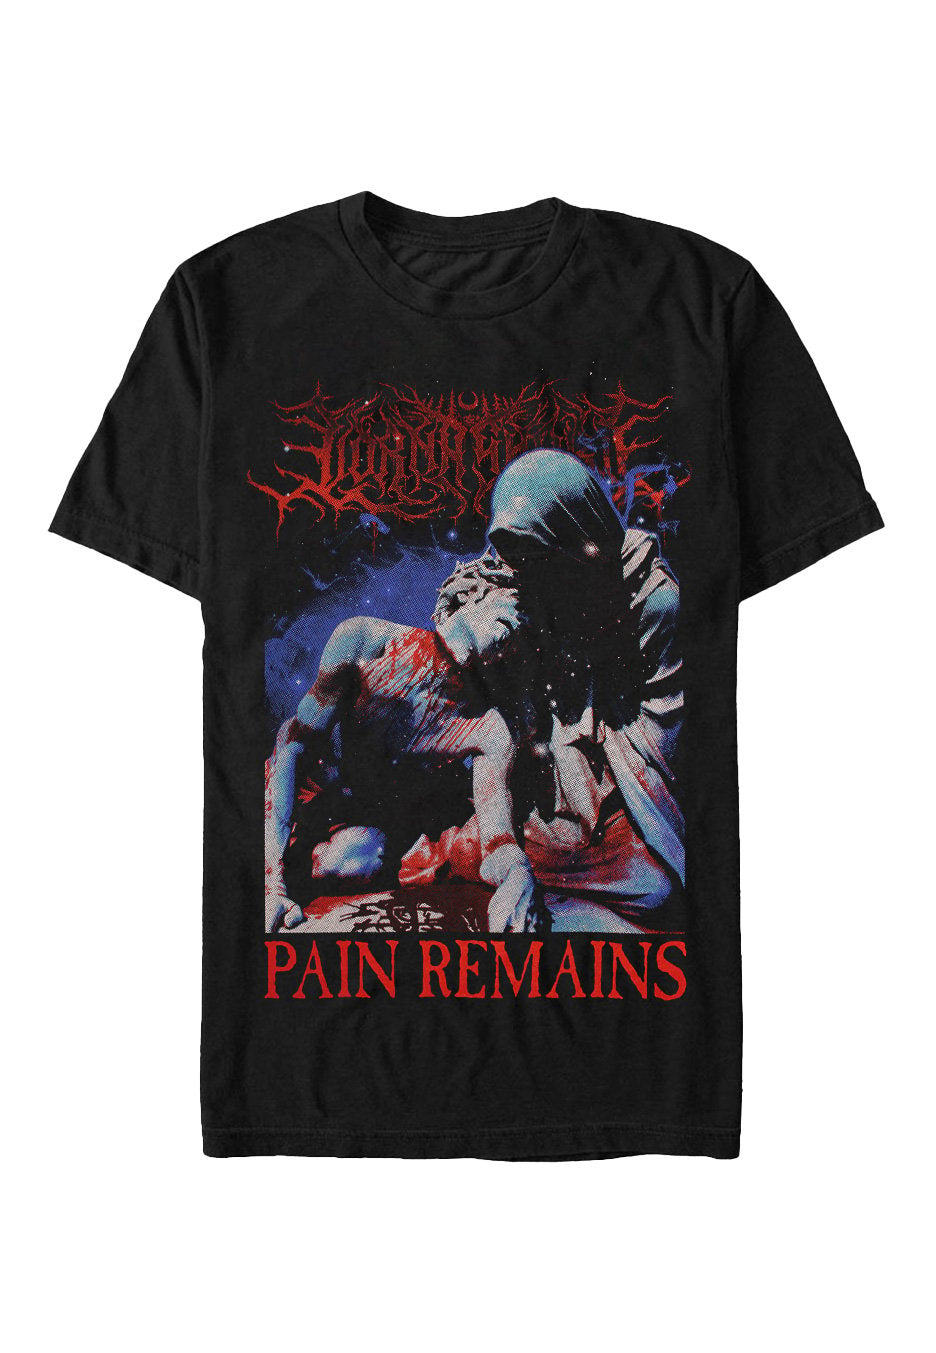 Lorna Shore - Pain Remains Tour 2023 - T-Shirt